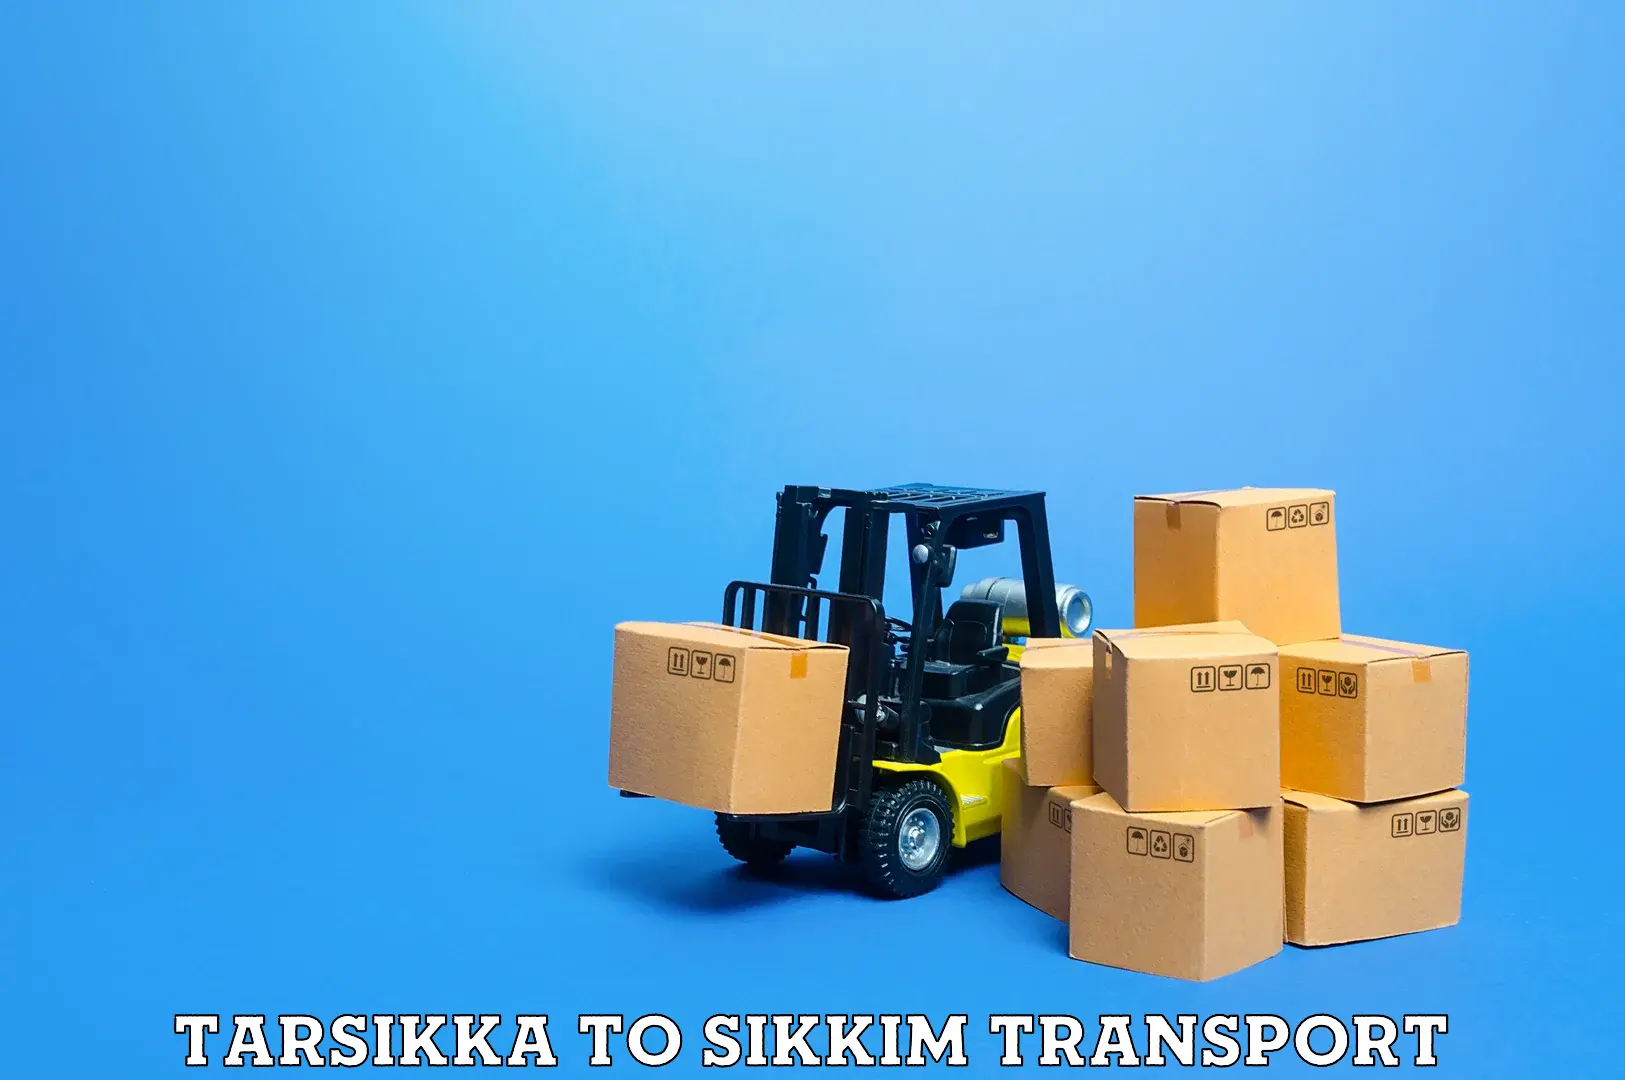 Transport services Tarsikka to Mangan